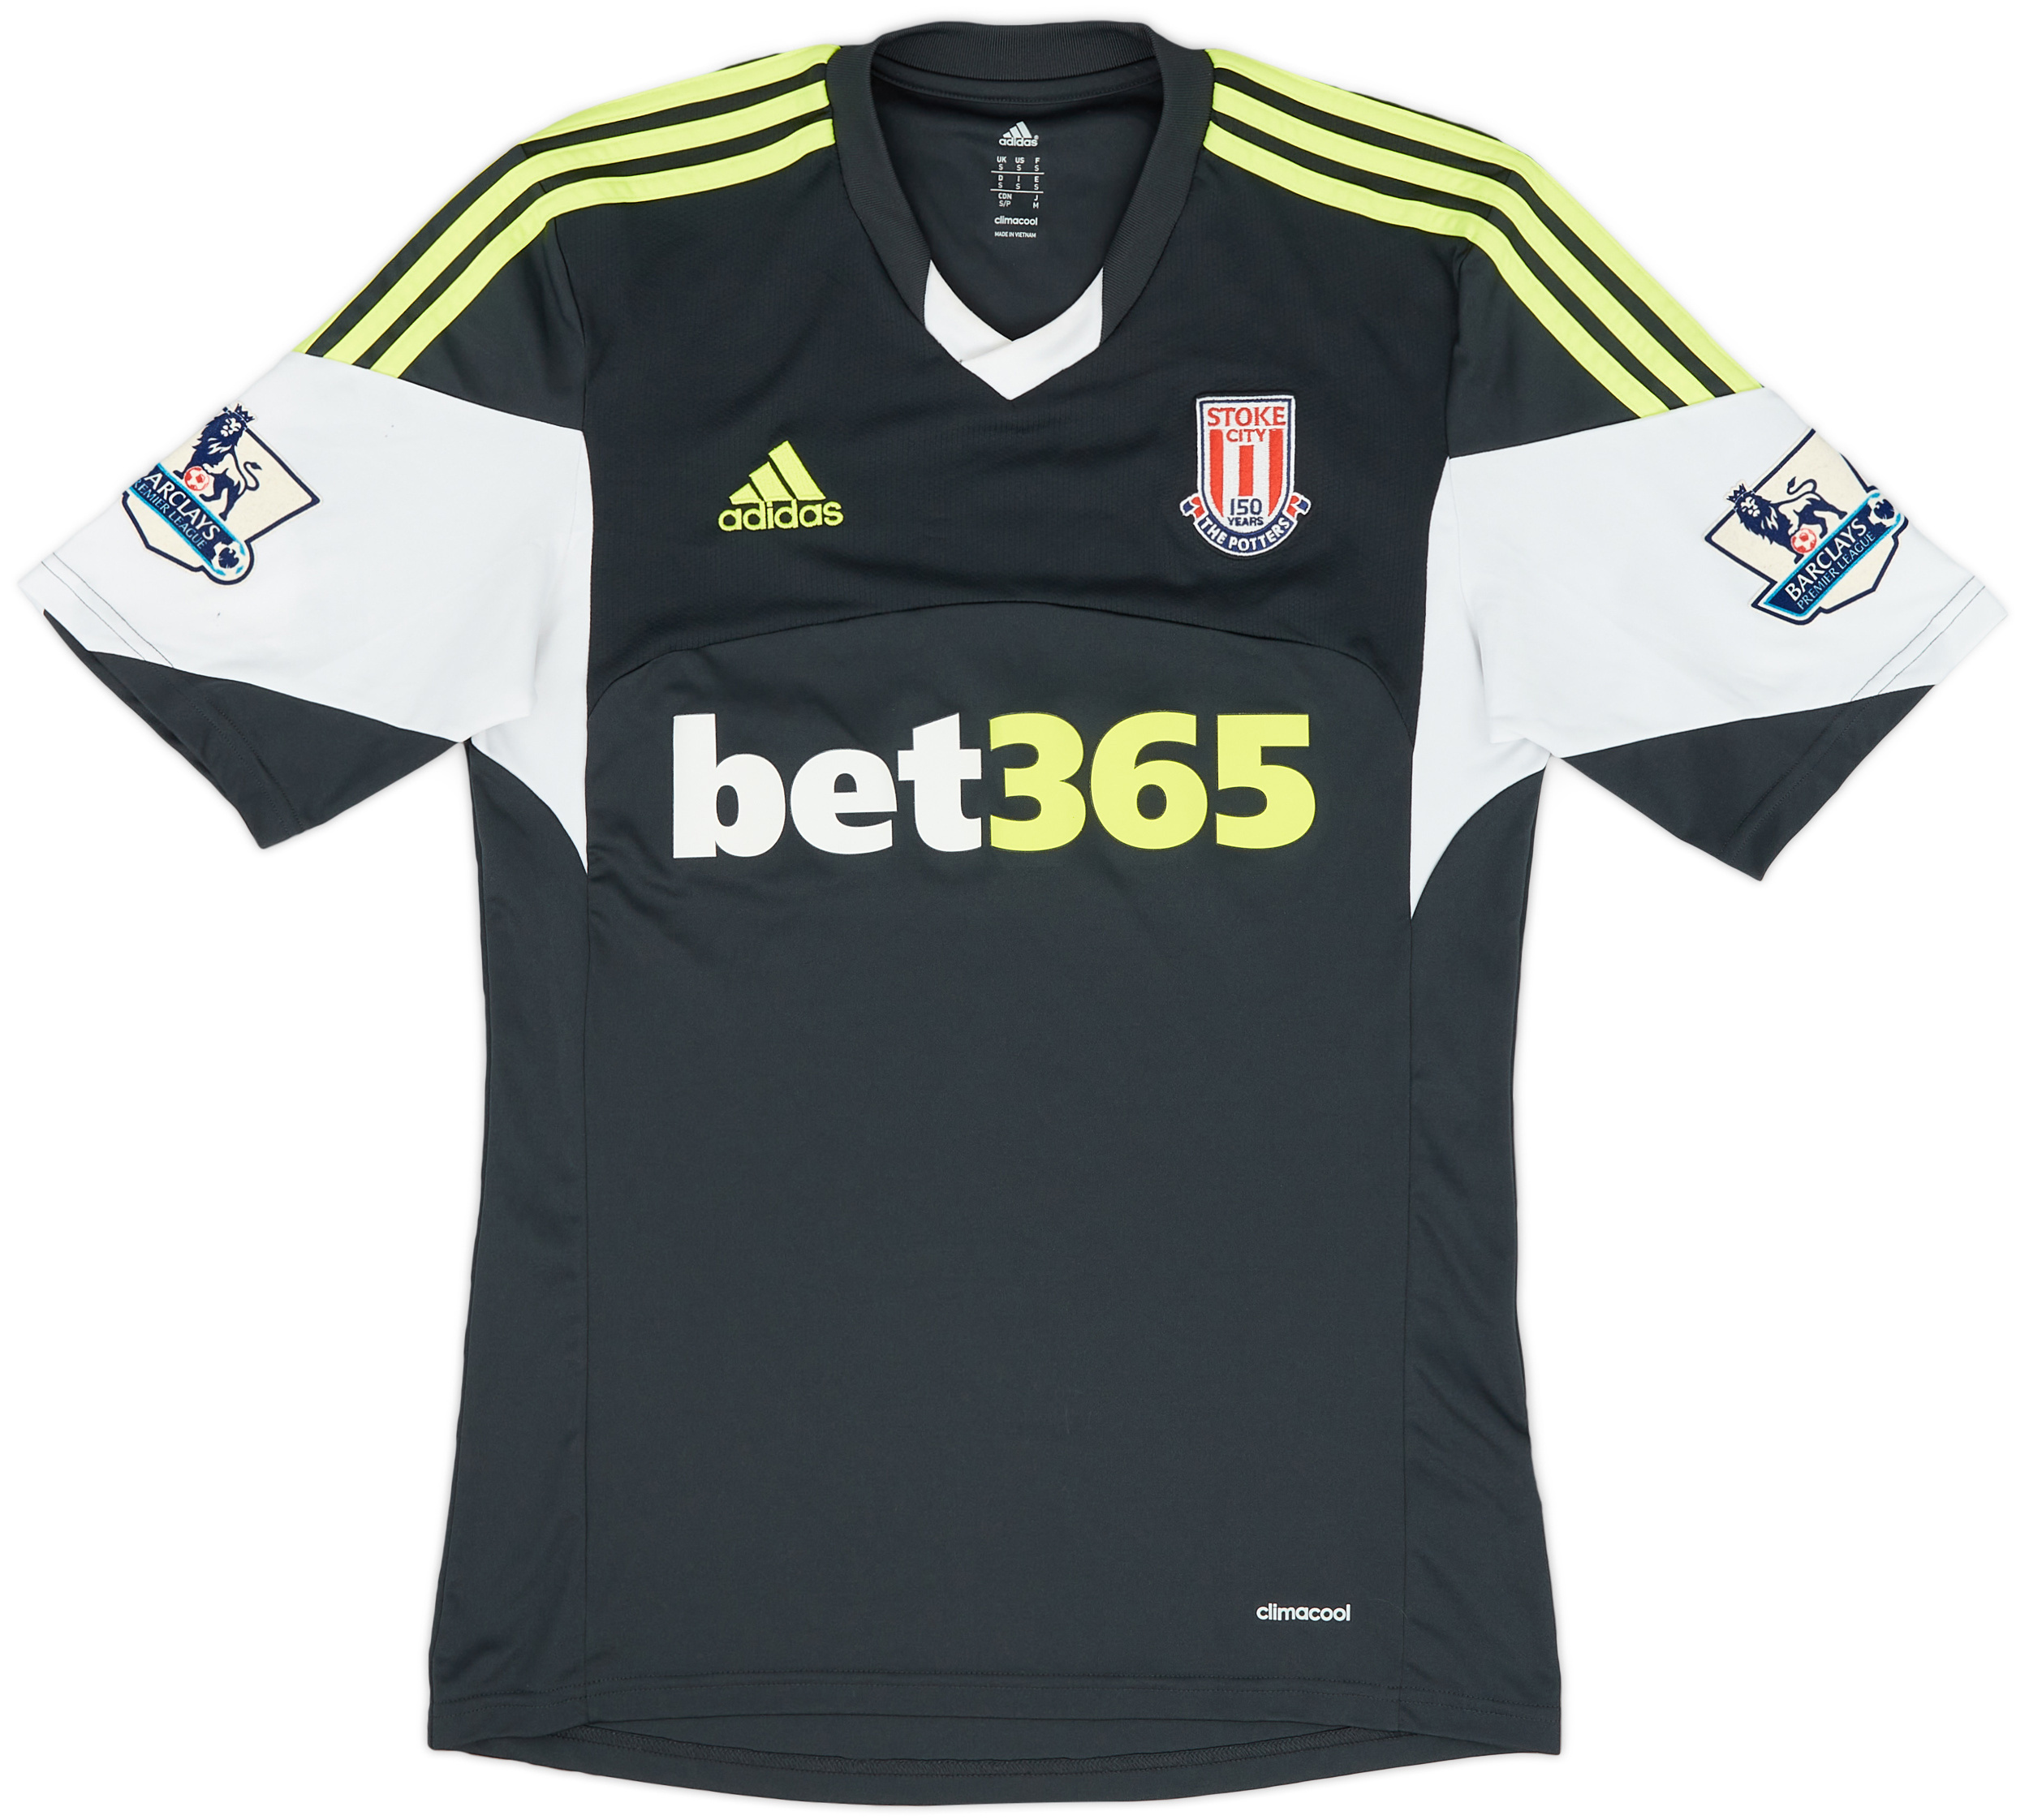 2013-14 Stoke City '150 Years' Away Shirt - 9/10 - ()